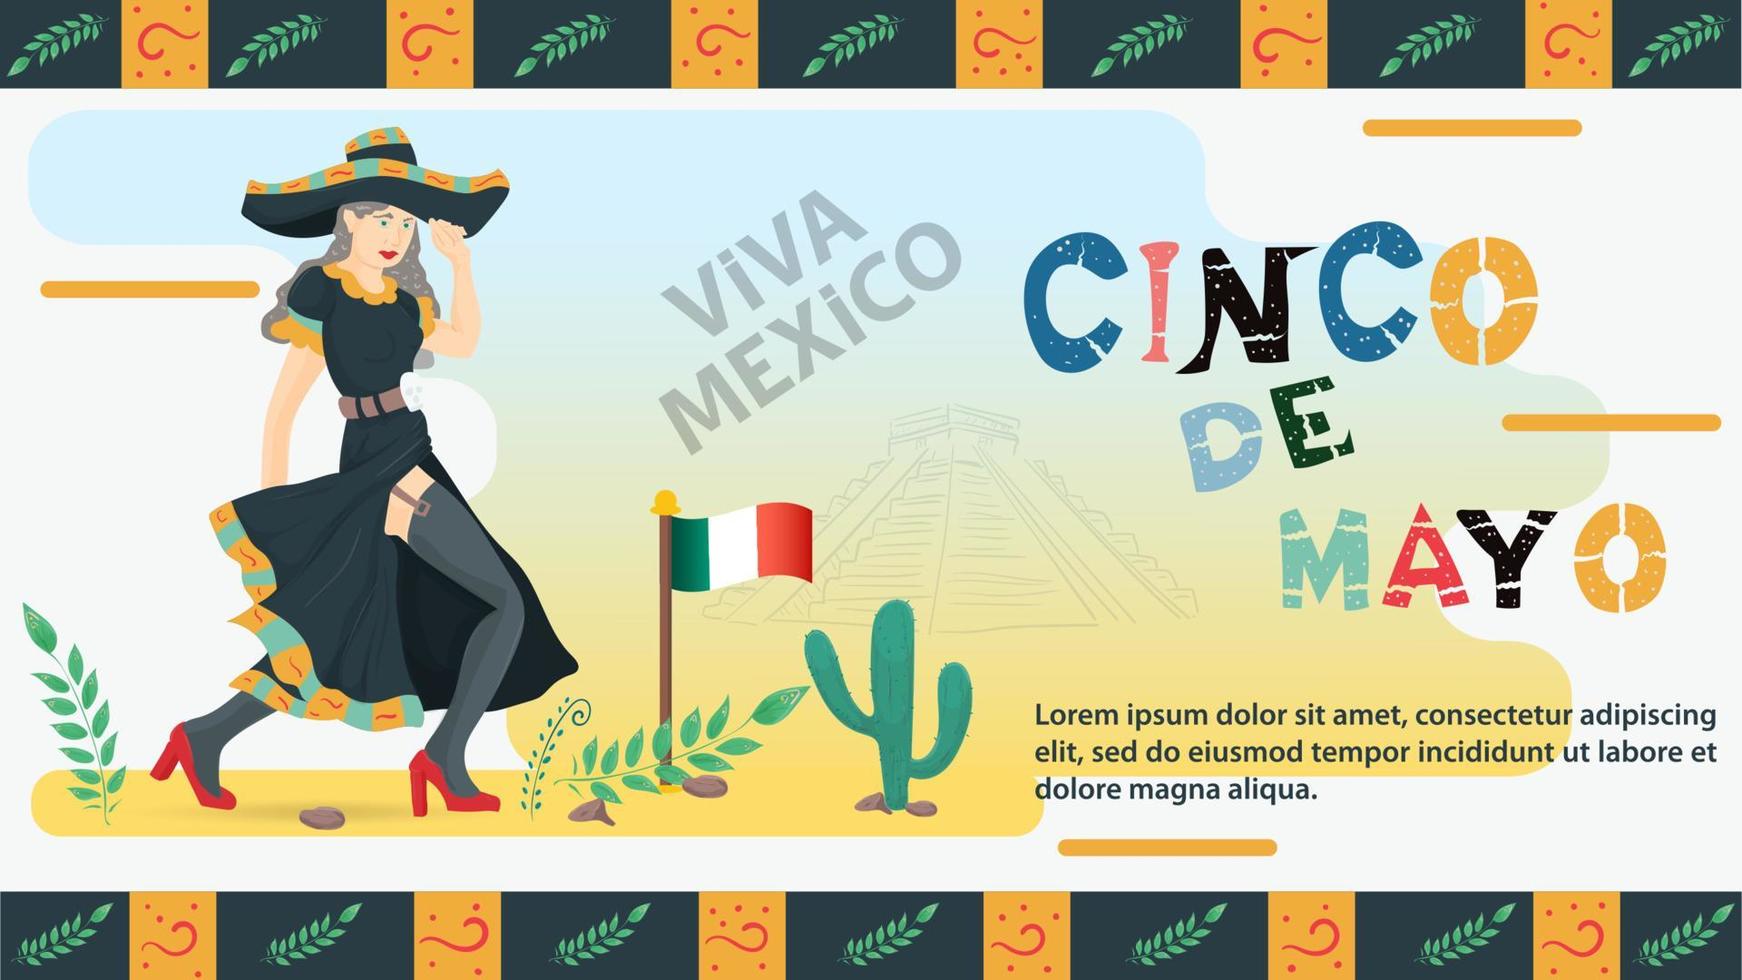 flache Designillustration des Vektors auf dem Thema des mexikanischen Feiertags Cinco de Mayo eine Frau in einem schwarzen Kleid und in den Strümpfen hält einen Sombrerokopfschmuck mit ihrer Hand vektor